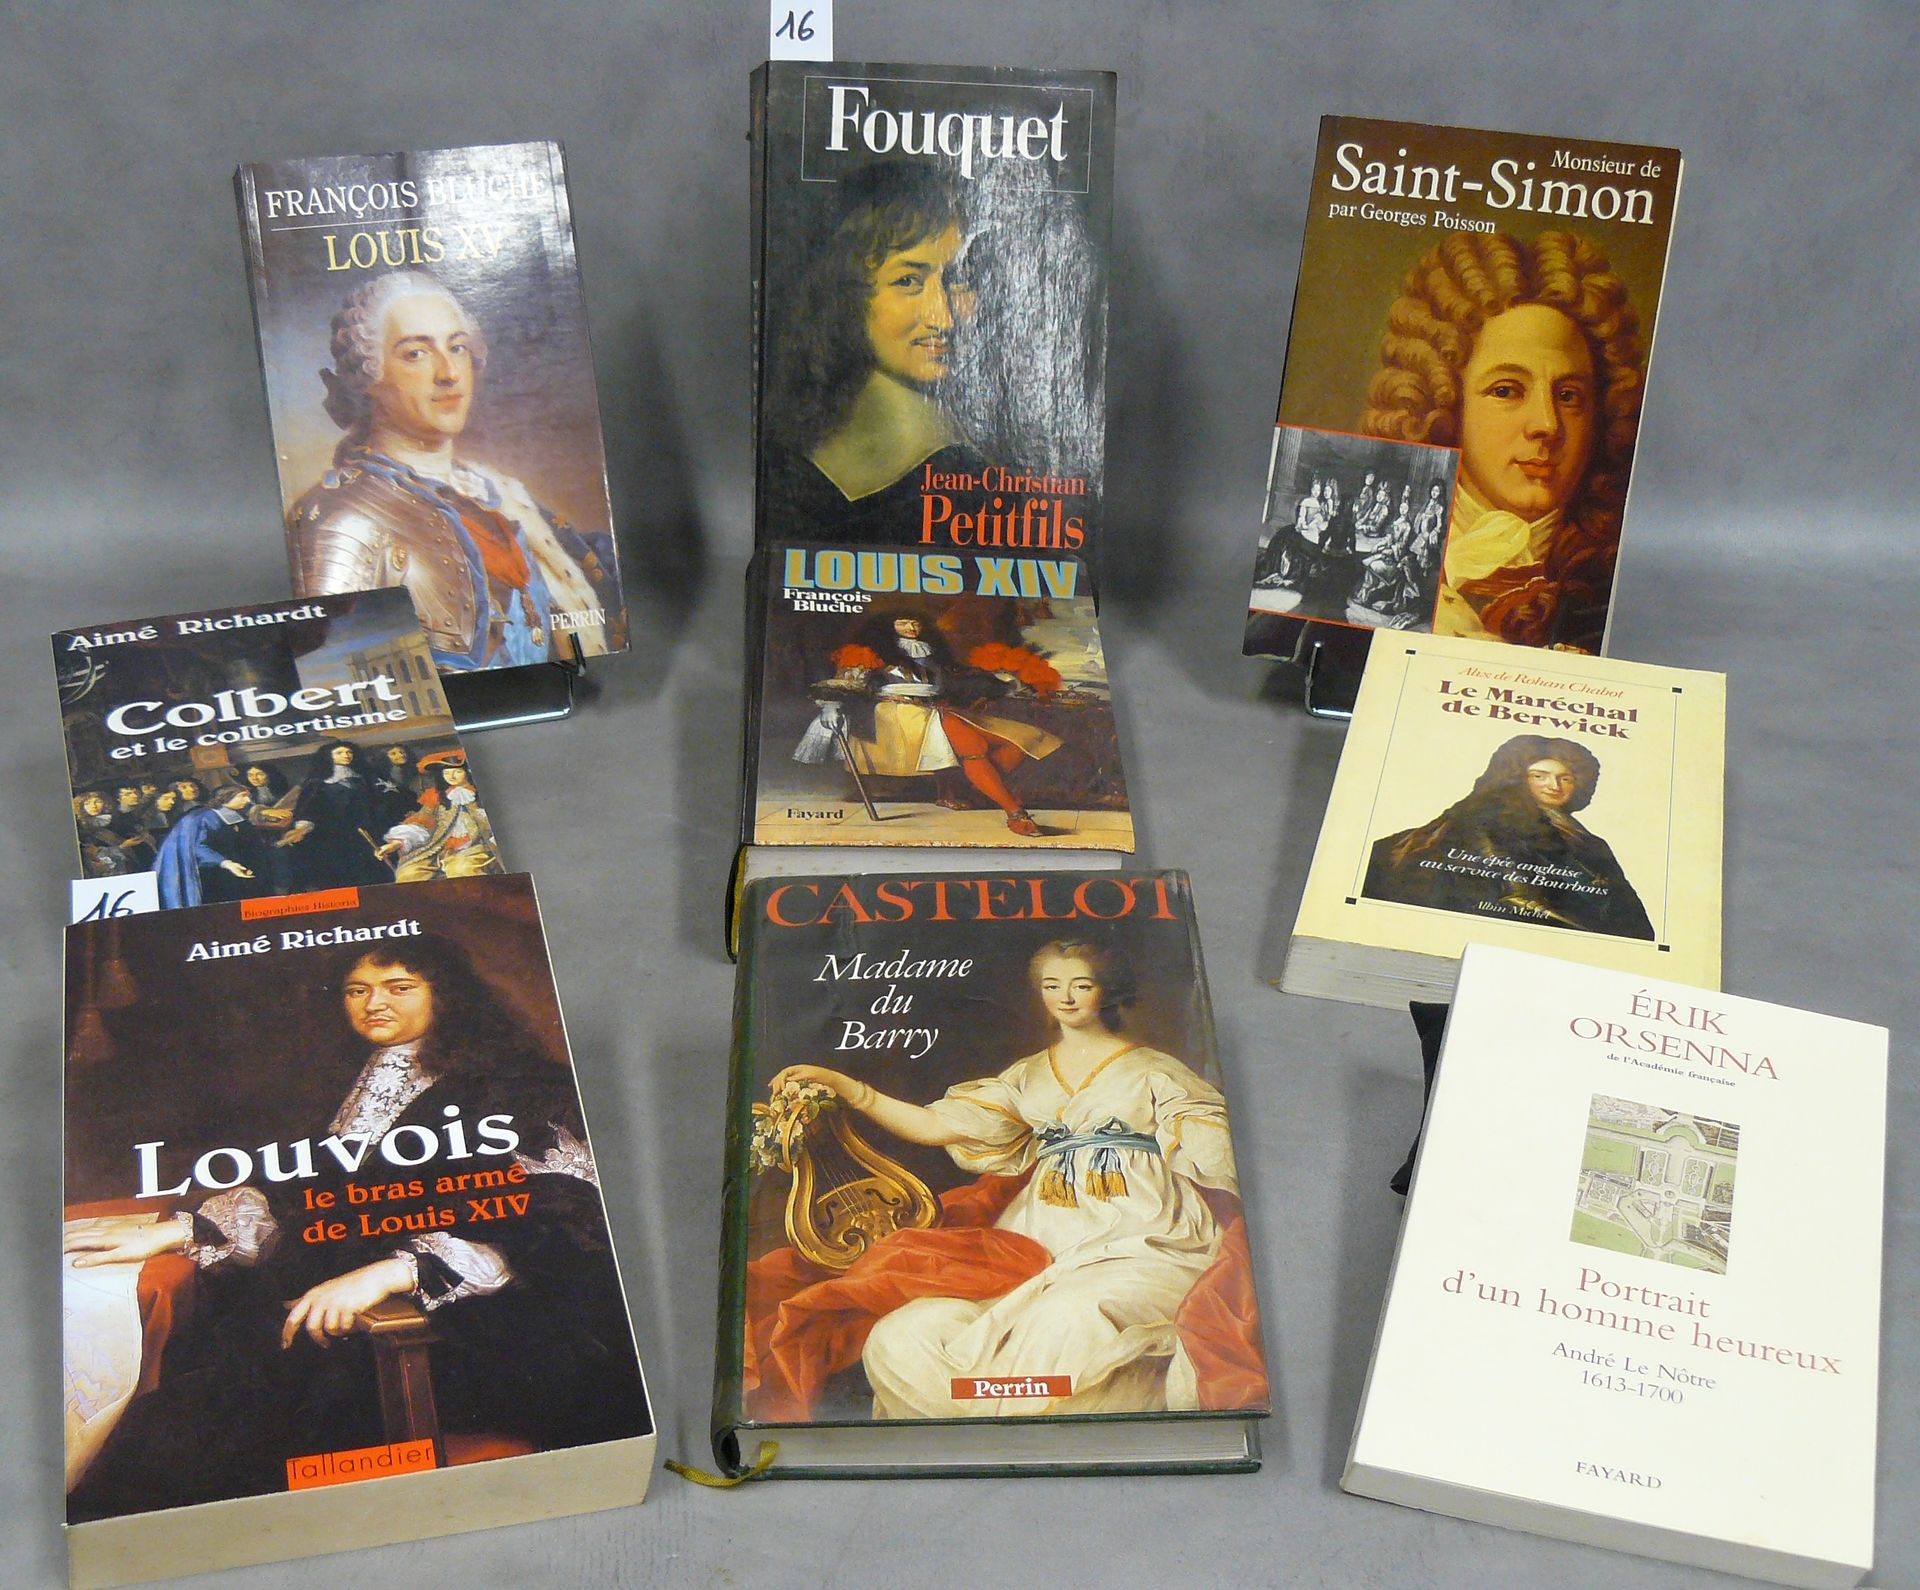 ANCIEN RÉGIME Lot von 9 Werken über das Ancien Régime, darunter : Fouquet